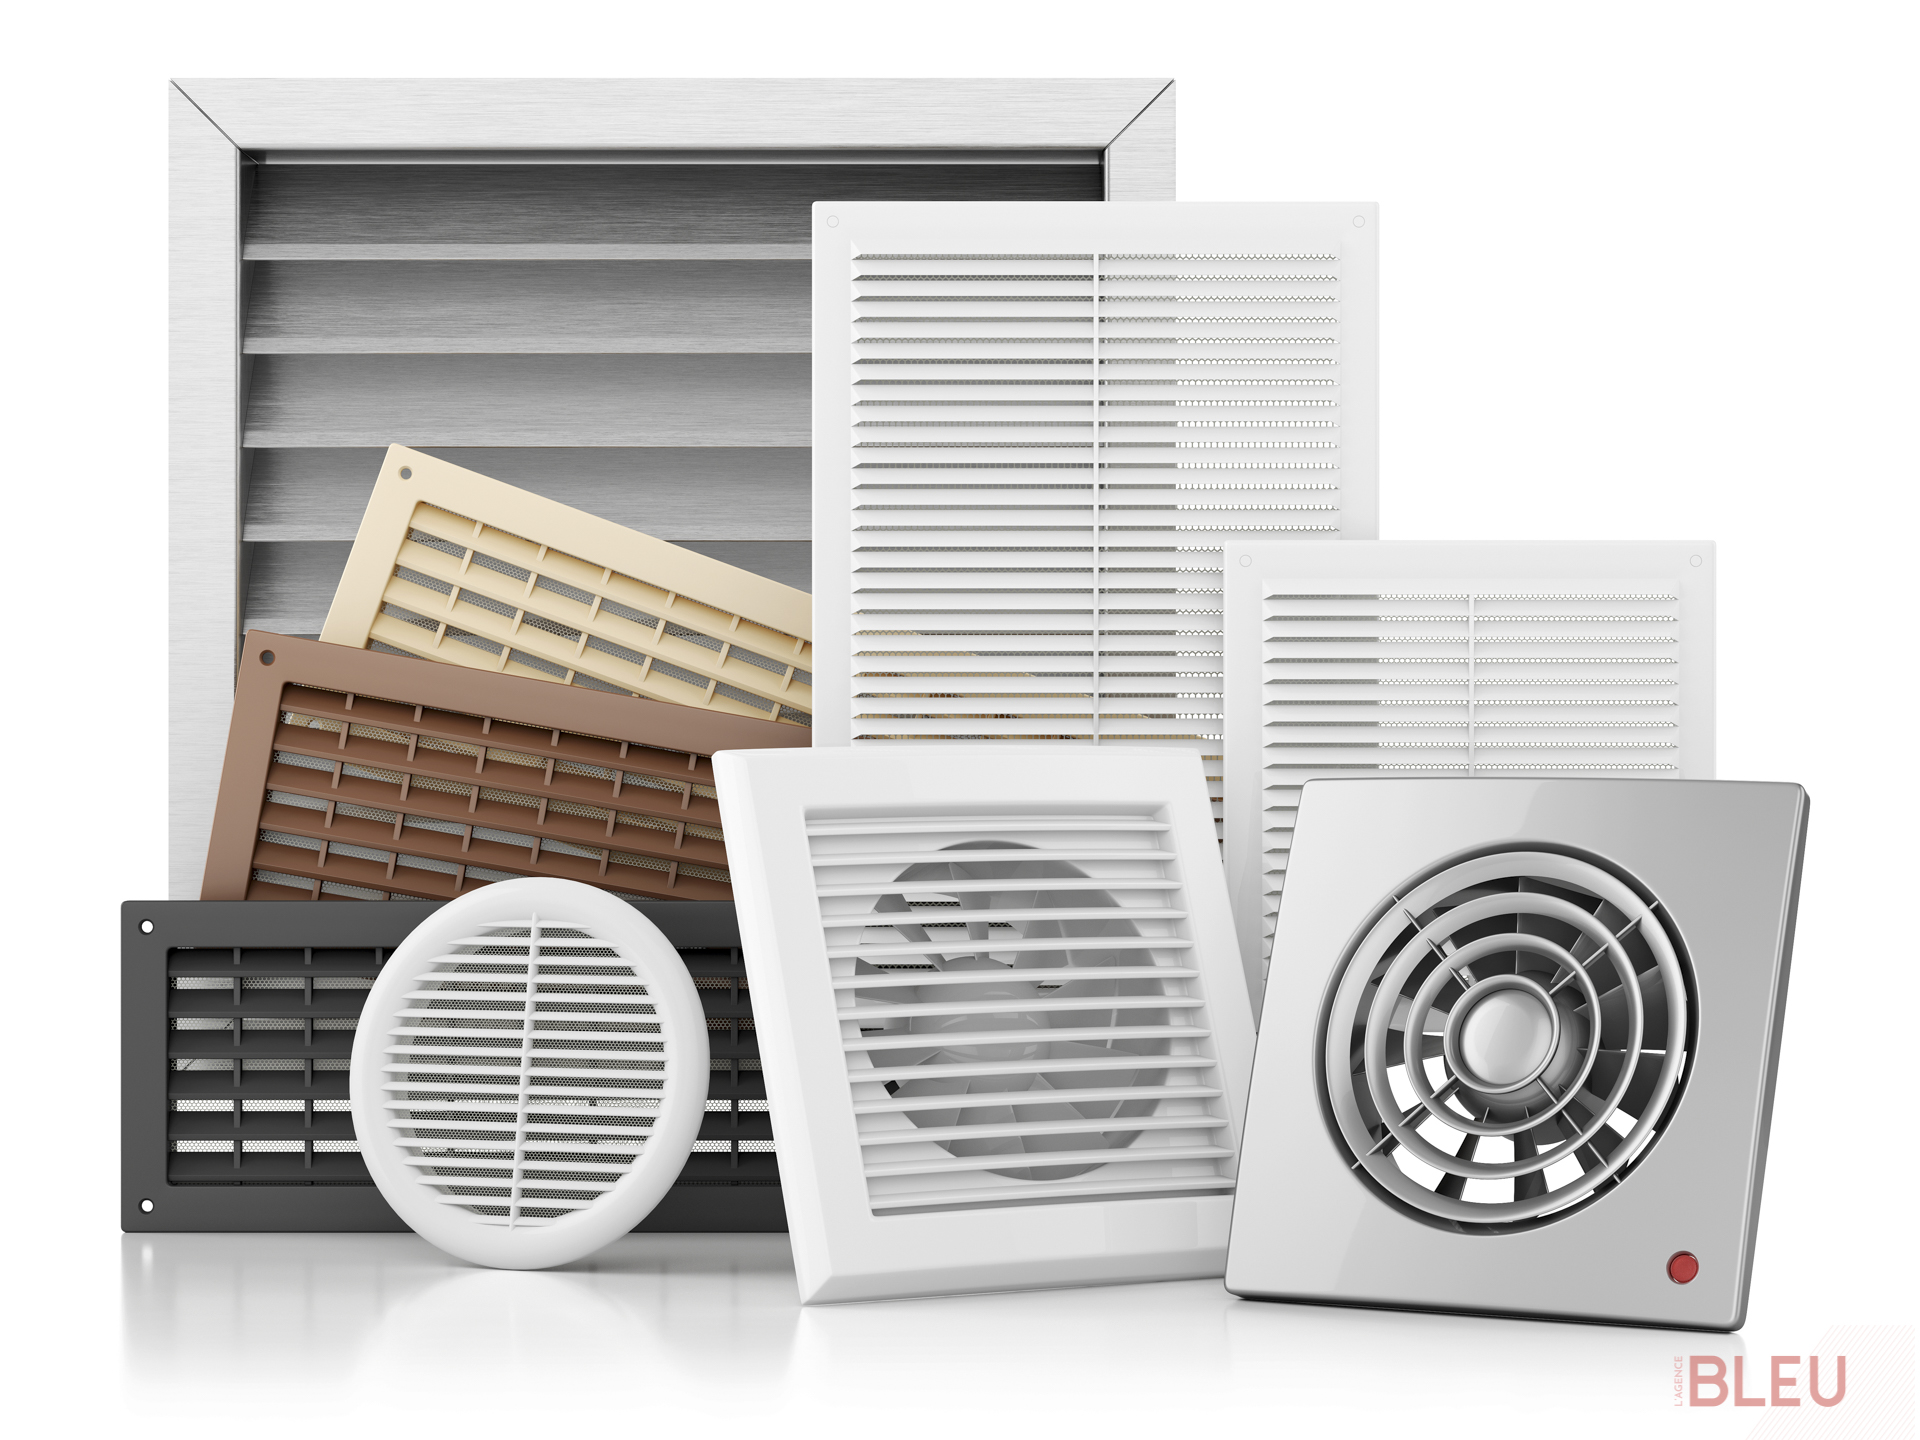 La ventilation est primordiale dans les appartements pour renouveler l'air et éviter l'humidité qui engendre des problèmes de santé et de dégâts. Installez un système de ventilation mécanique contrôlée (VMC simple flux, double flux ou hybride) éligible aux subventions de rénovation d'isolation.